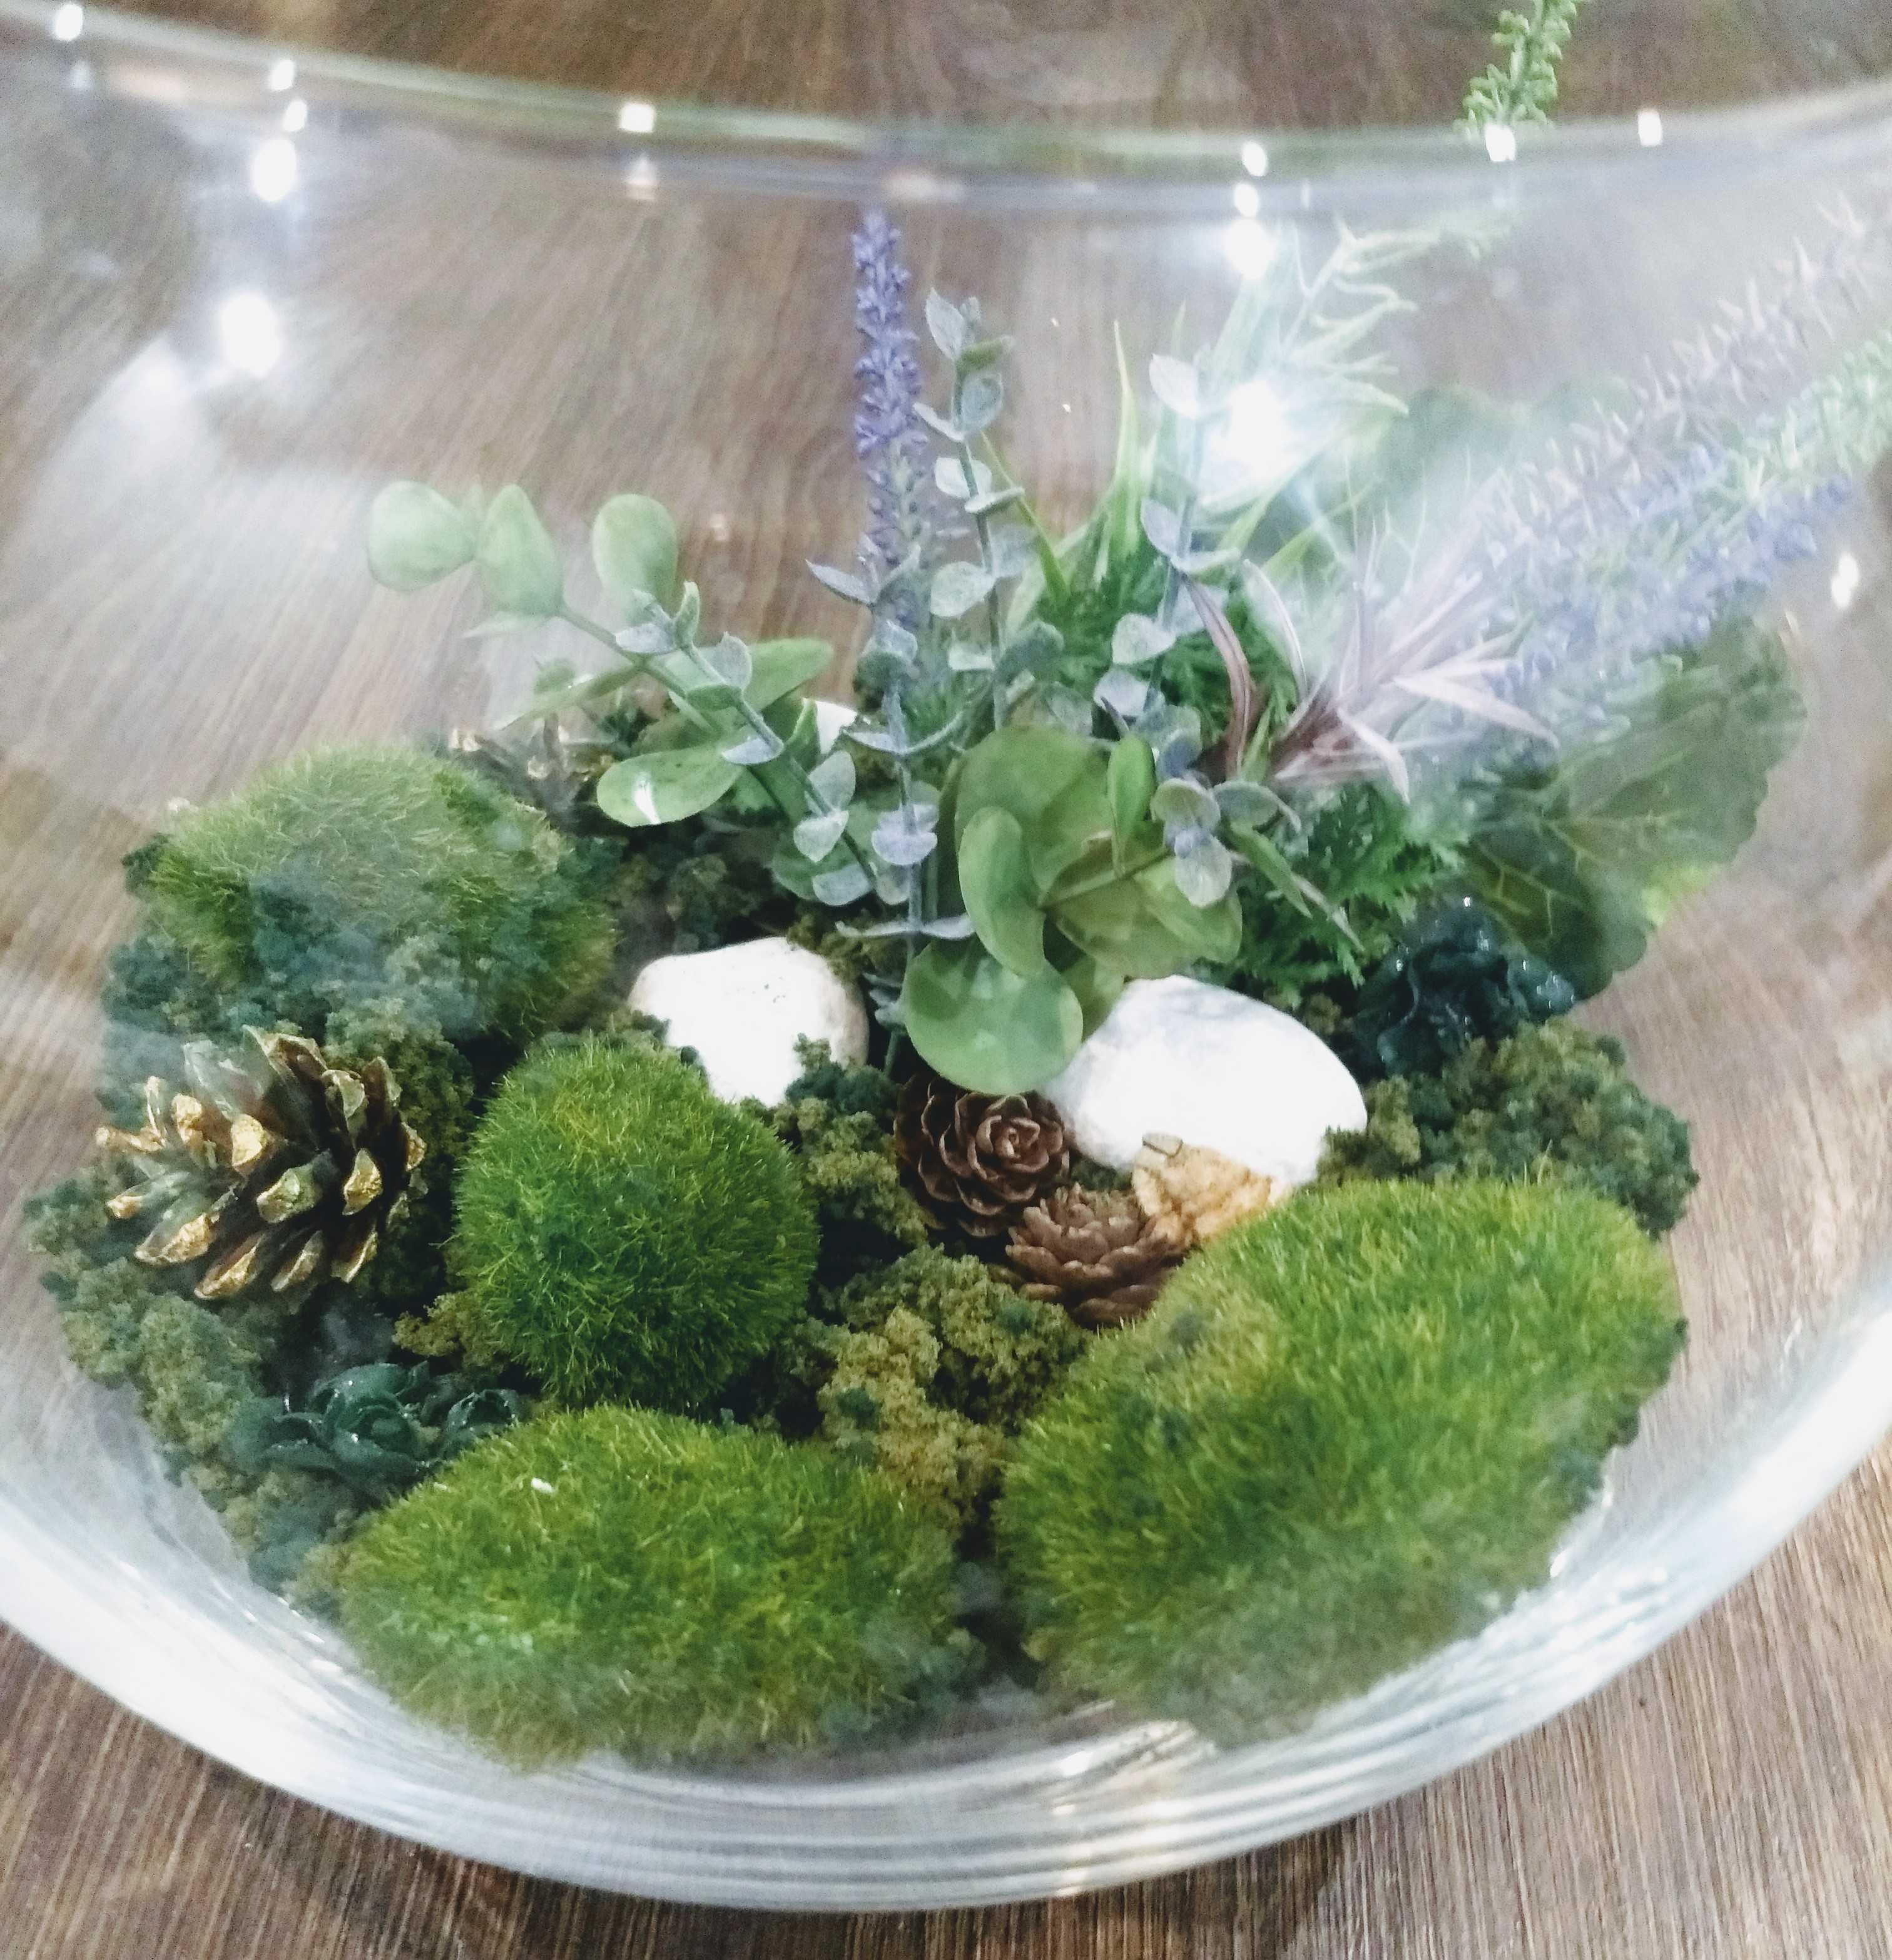 Ogród, las w szkle, ozdobna kompozycja florystyczna w szklanej kuli.